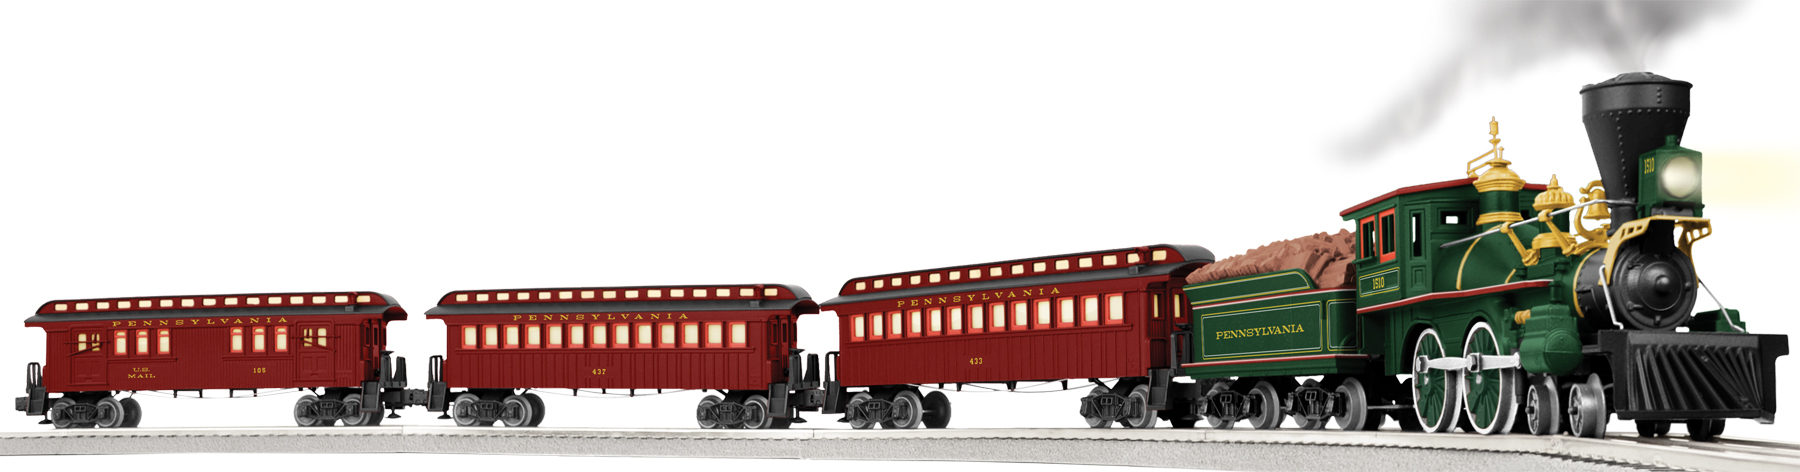 lionel trains | Lionel Trains